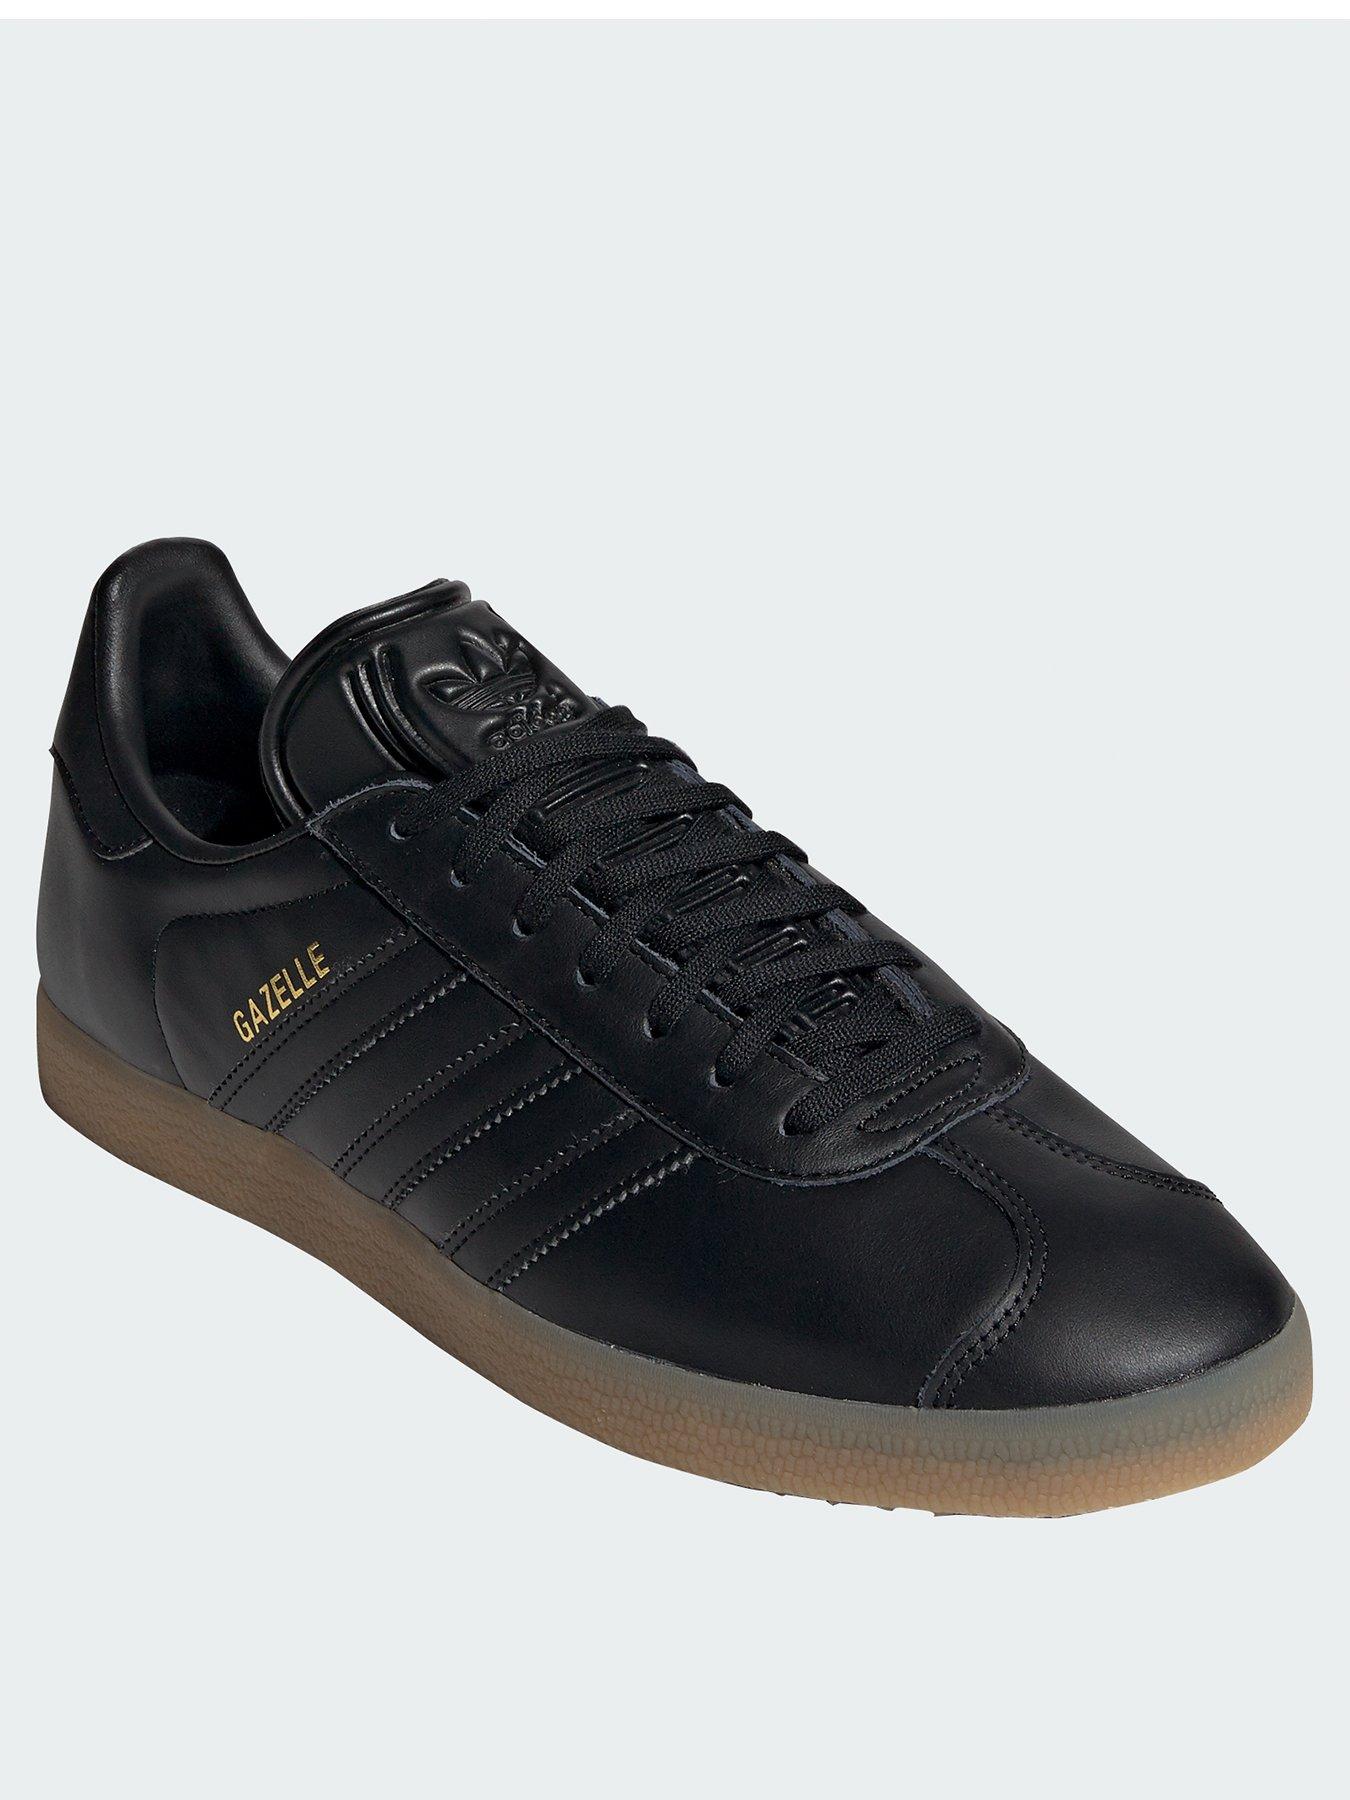 adidas gazelle black leather gum sole